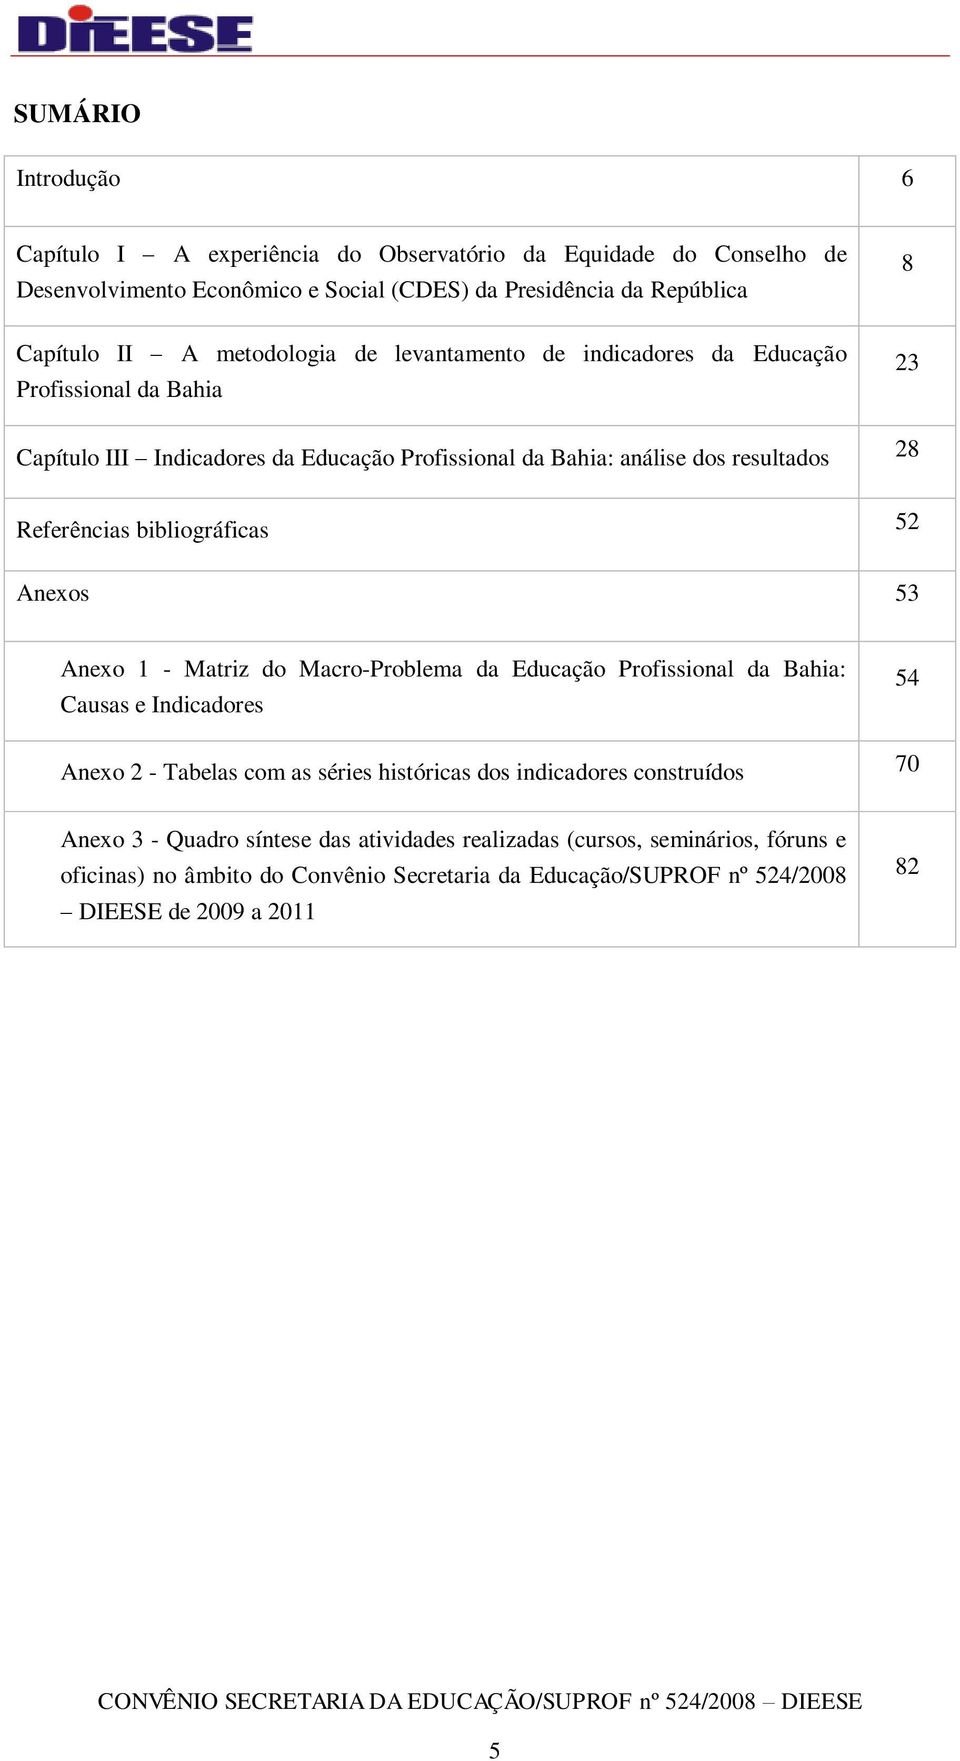 bibliográficas 52 Anexos 53 Anexo 1 - Matriz do Macro-Problema da Educação Profissional da Bahia: Causas e Indicadores 54 Anexo 2 - Tabelas com as séries históricas dos indicadores